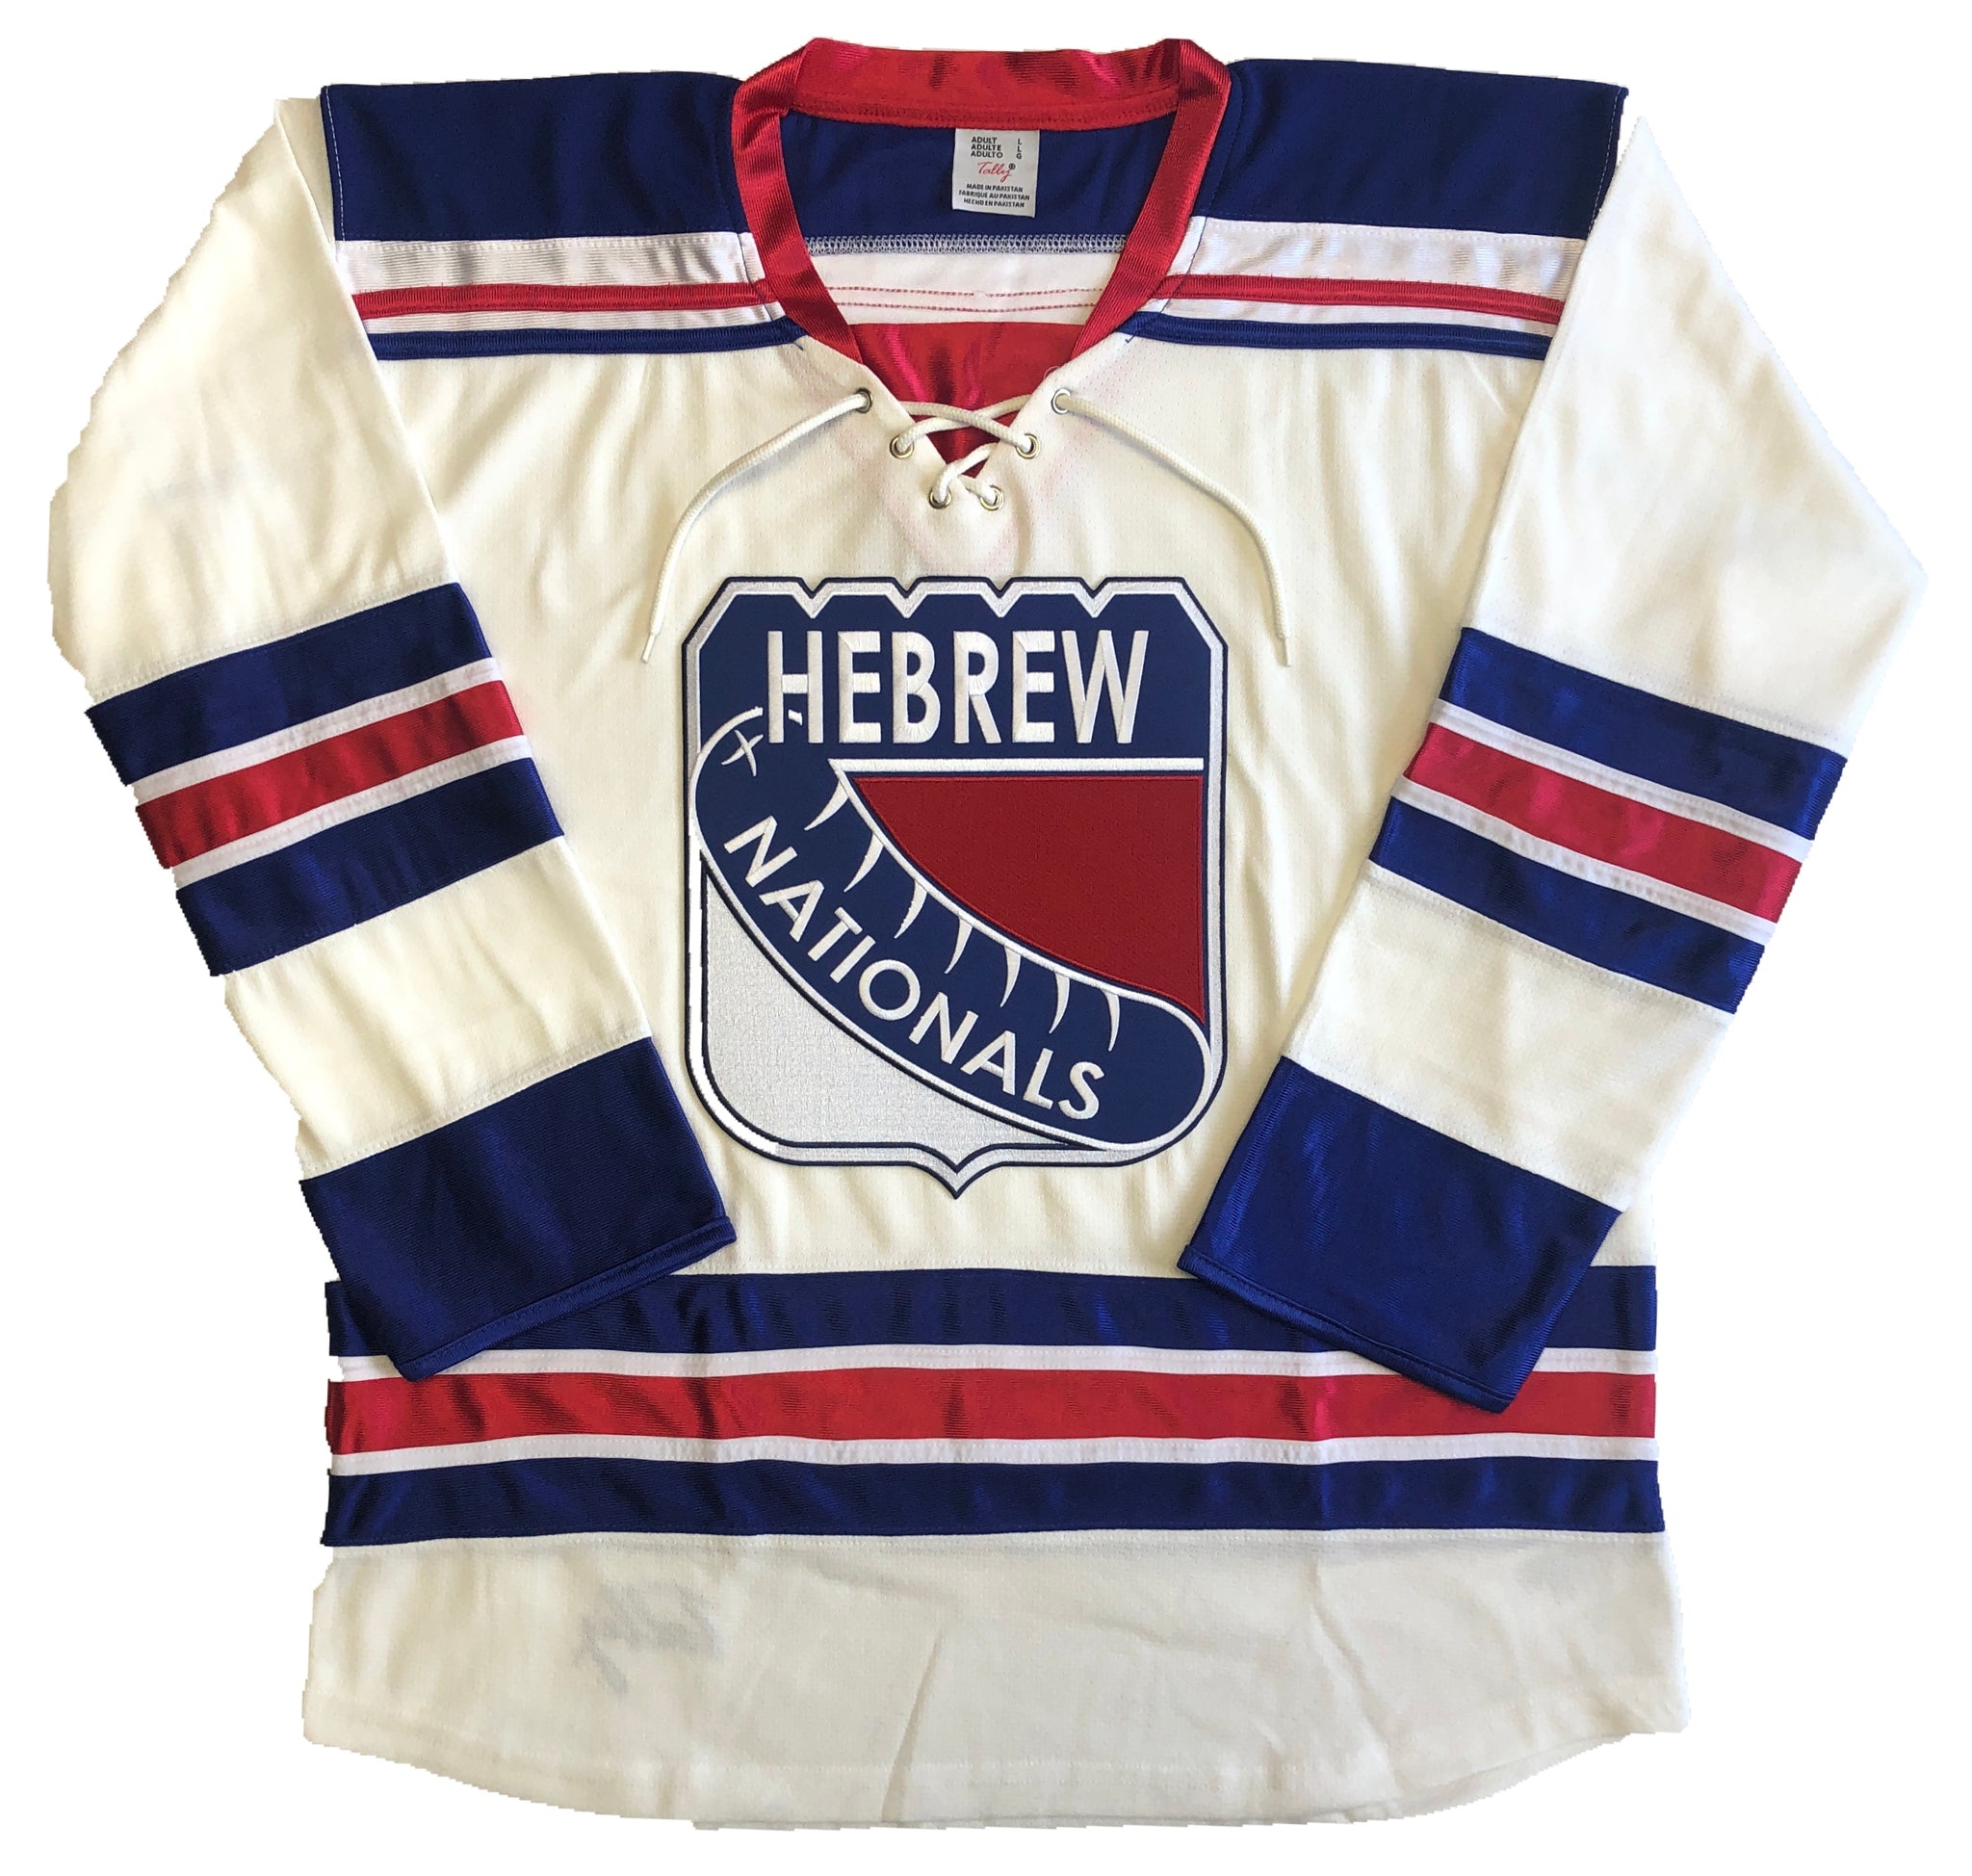 Custom Hockey New Arrivals Hockey Jerseys, Hockey Uniforms For